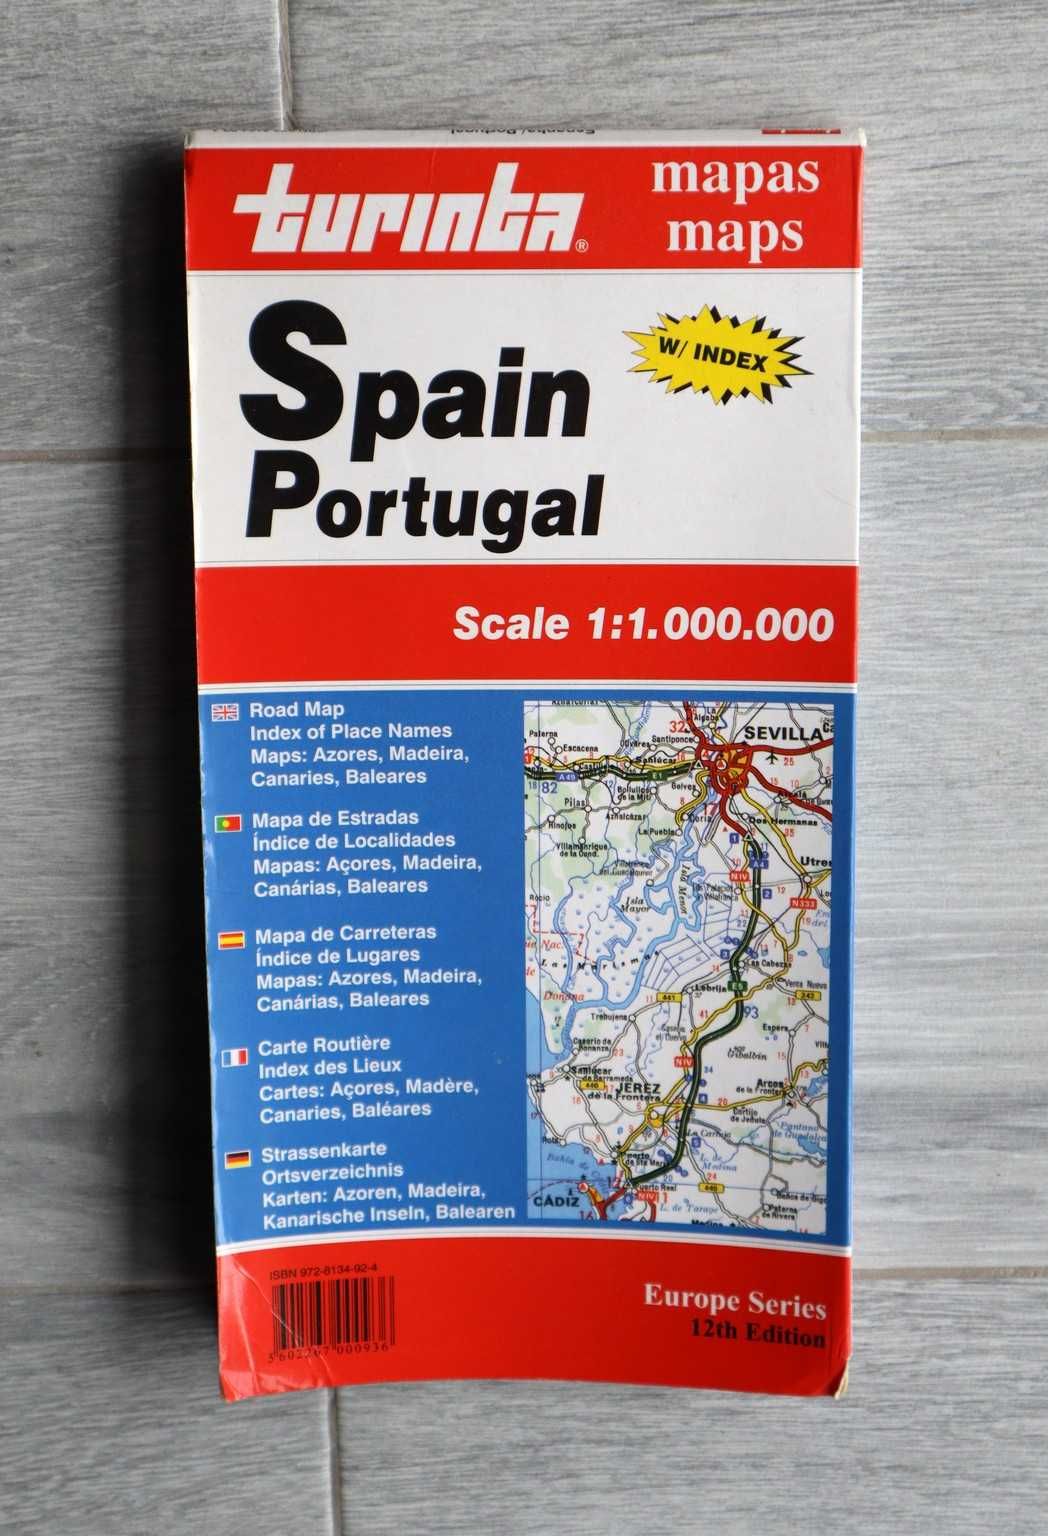 Mapas Peninsula Iberica Espanha Algarve Portugal Galicia Asturias Leon